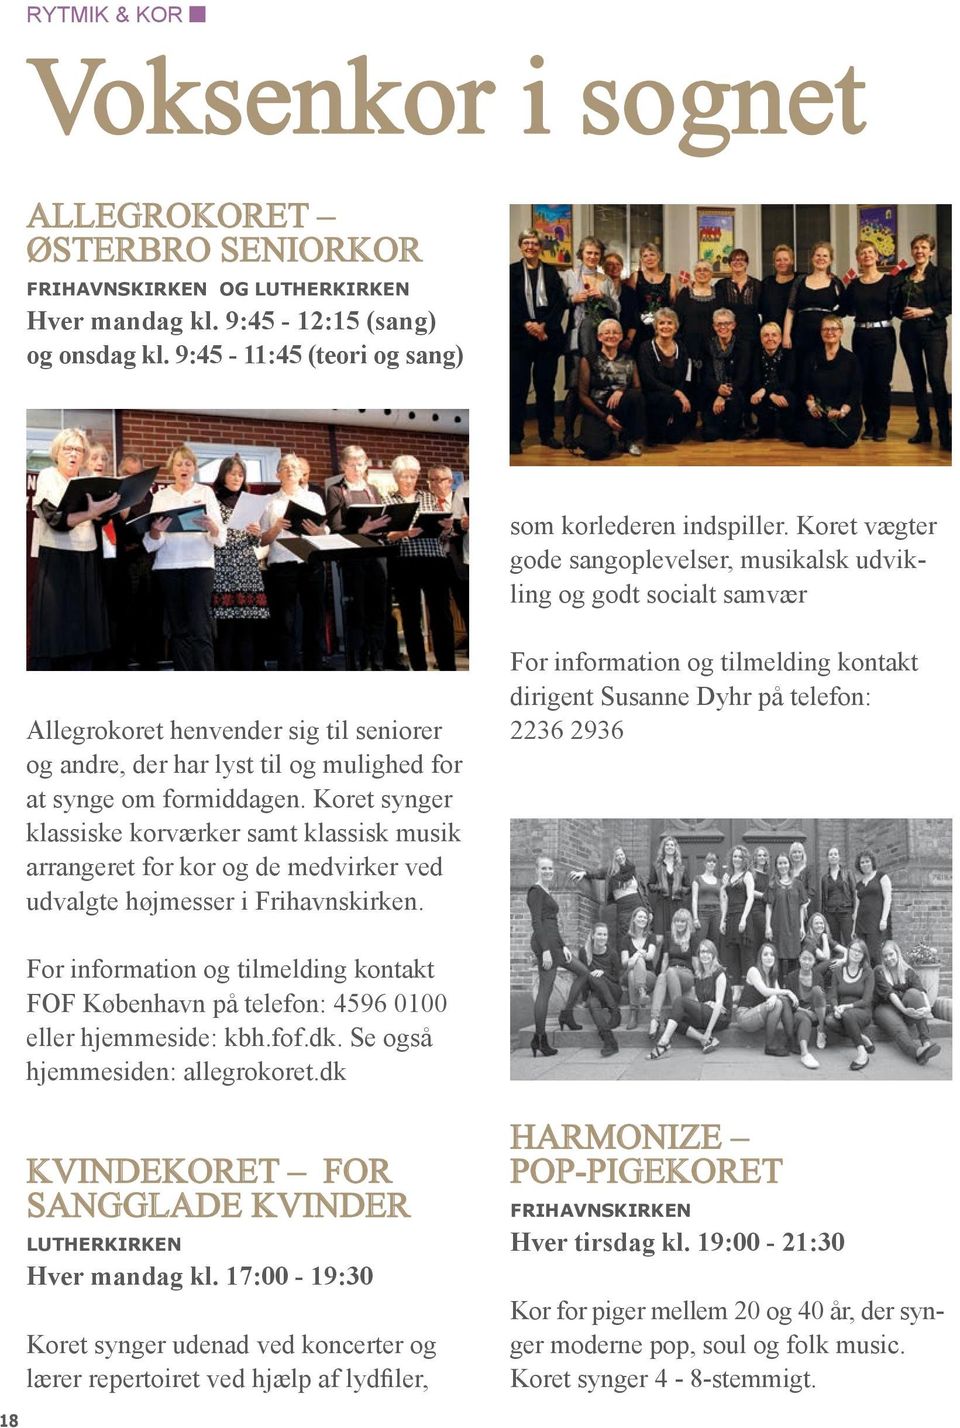 Koret synger klassiske korværker samt klassisk musik arrangeret for kor og de medvirker ved udvalgte højmesser i Frihavnskirken.